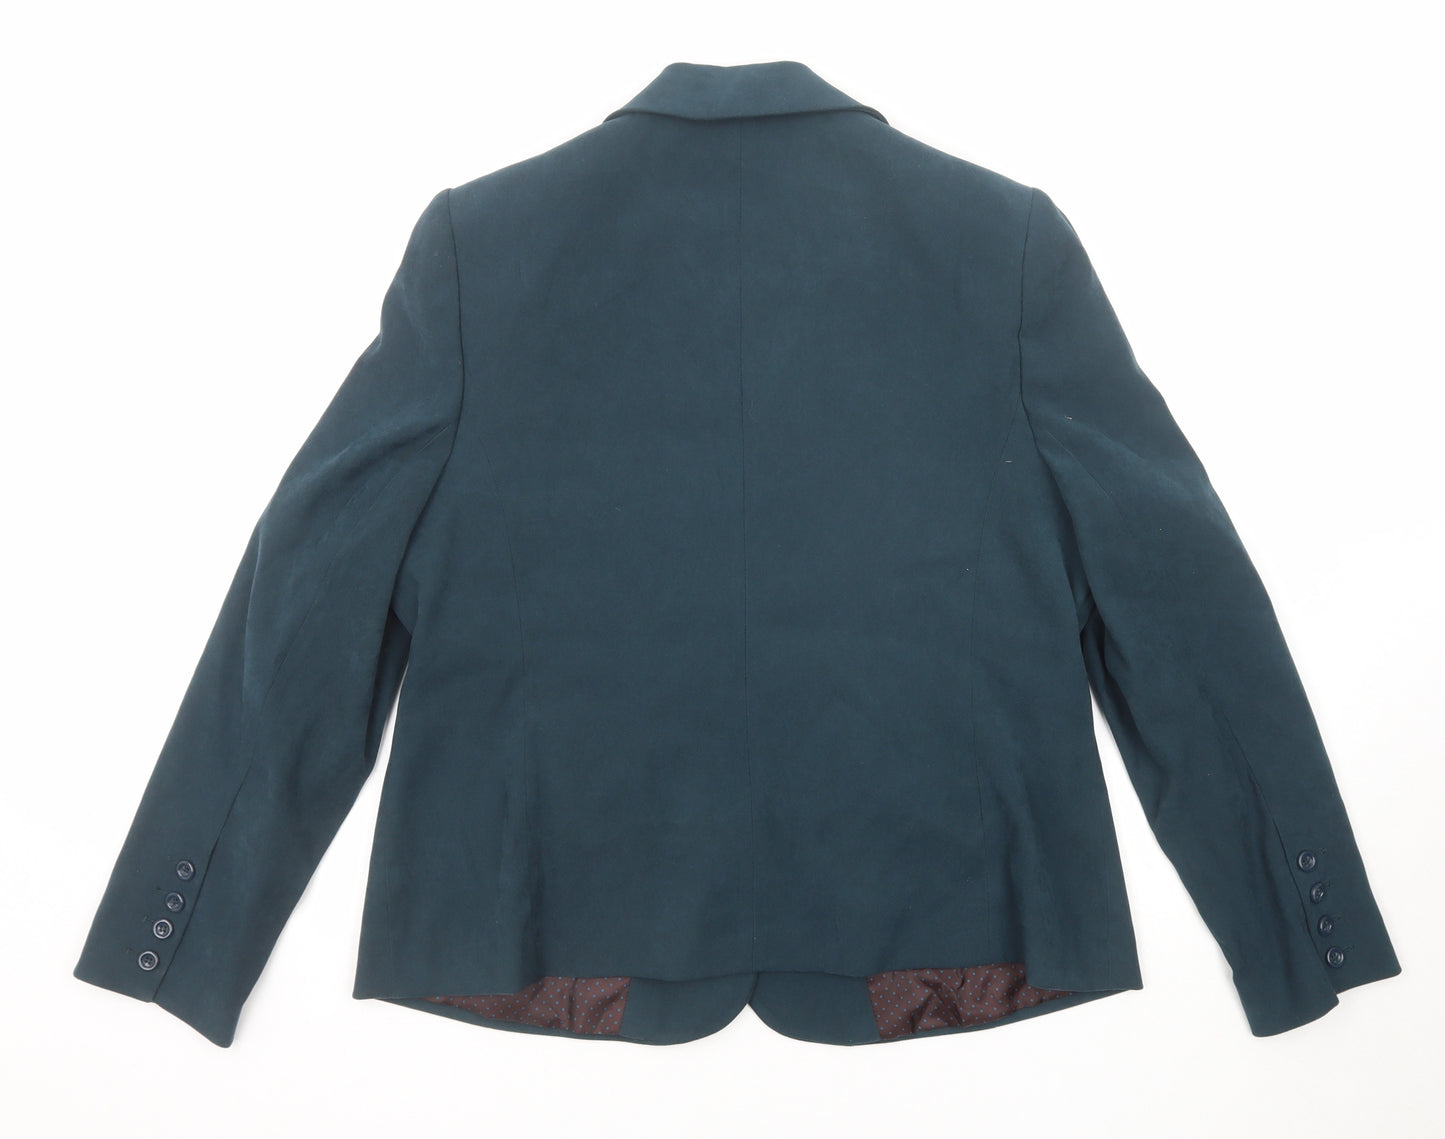 EWM Womens Green Polyester Jacket Blazer Size 16